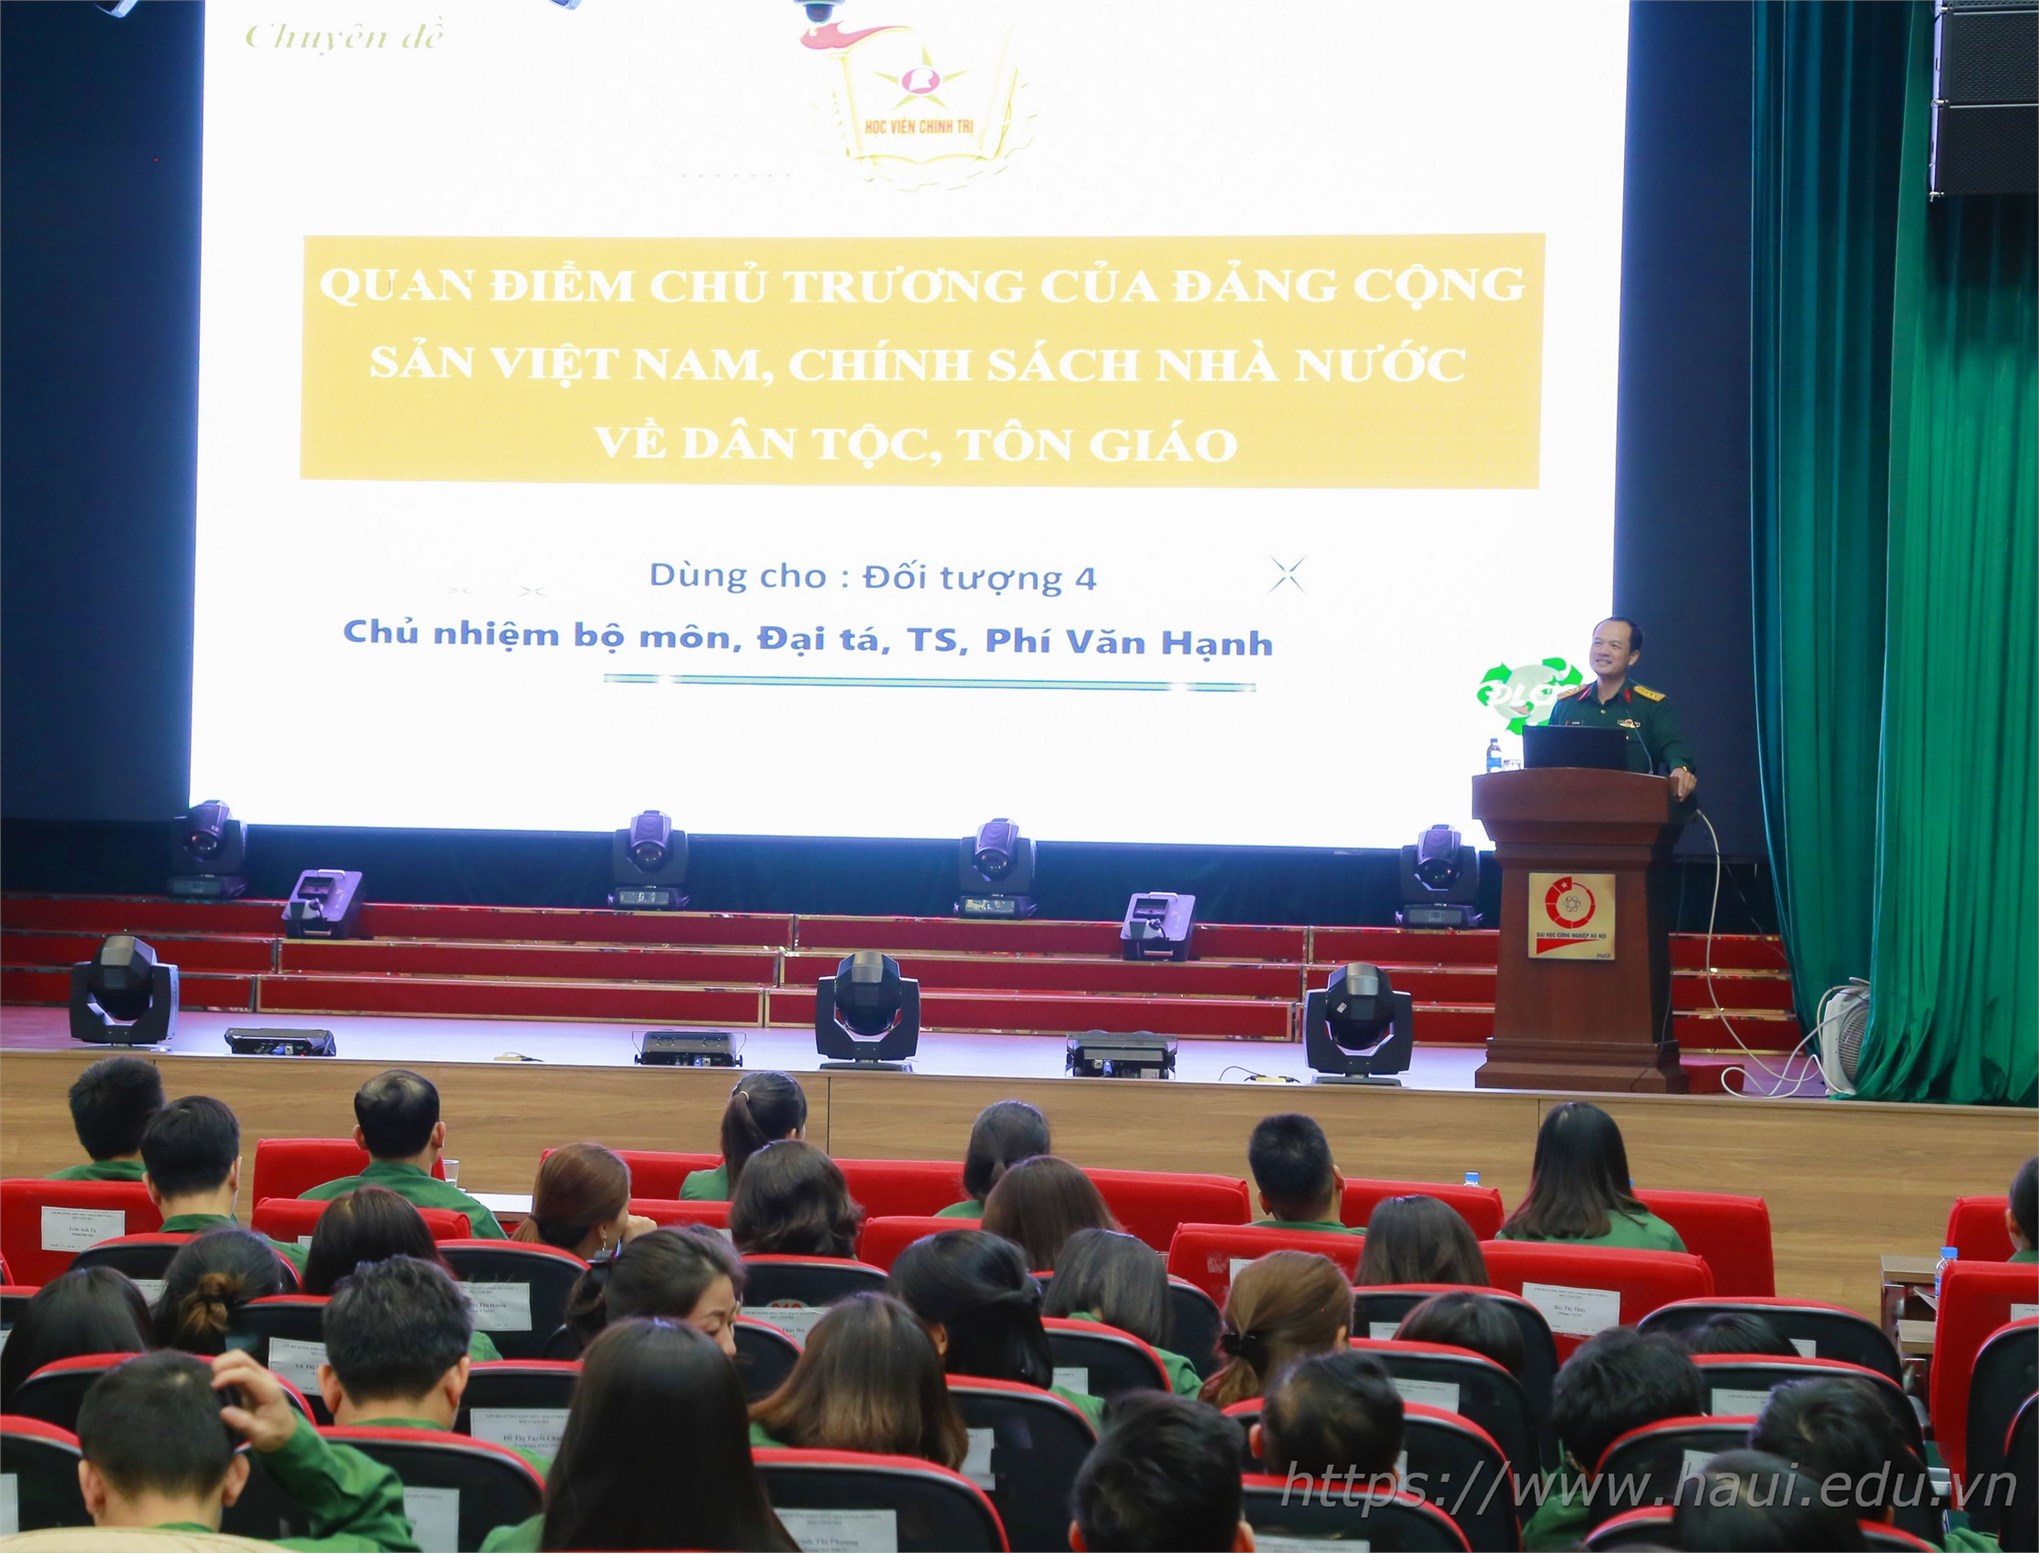 Trường Đại học Công nghiệp Hà Nội khai giảng Lớp bồi dưỡng kiến thức Quốc phòng và An ninh cho đối tượng 4